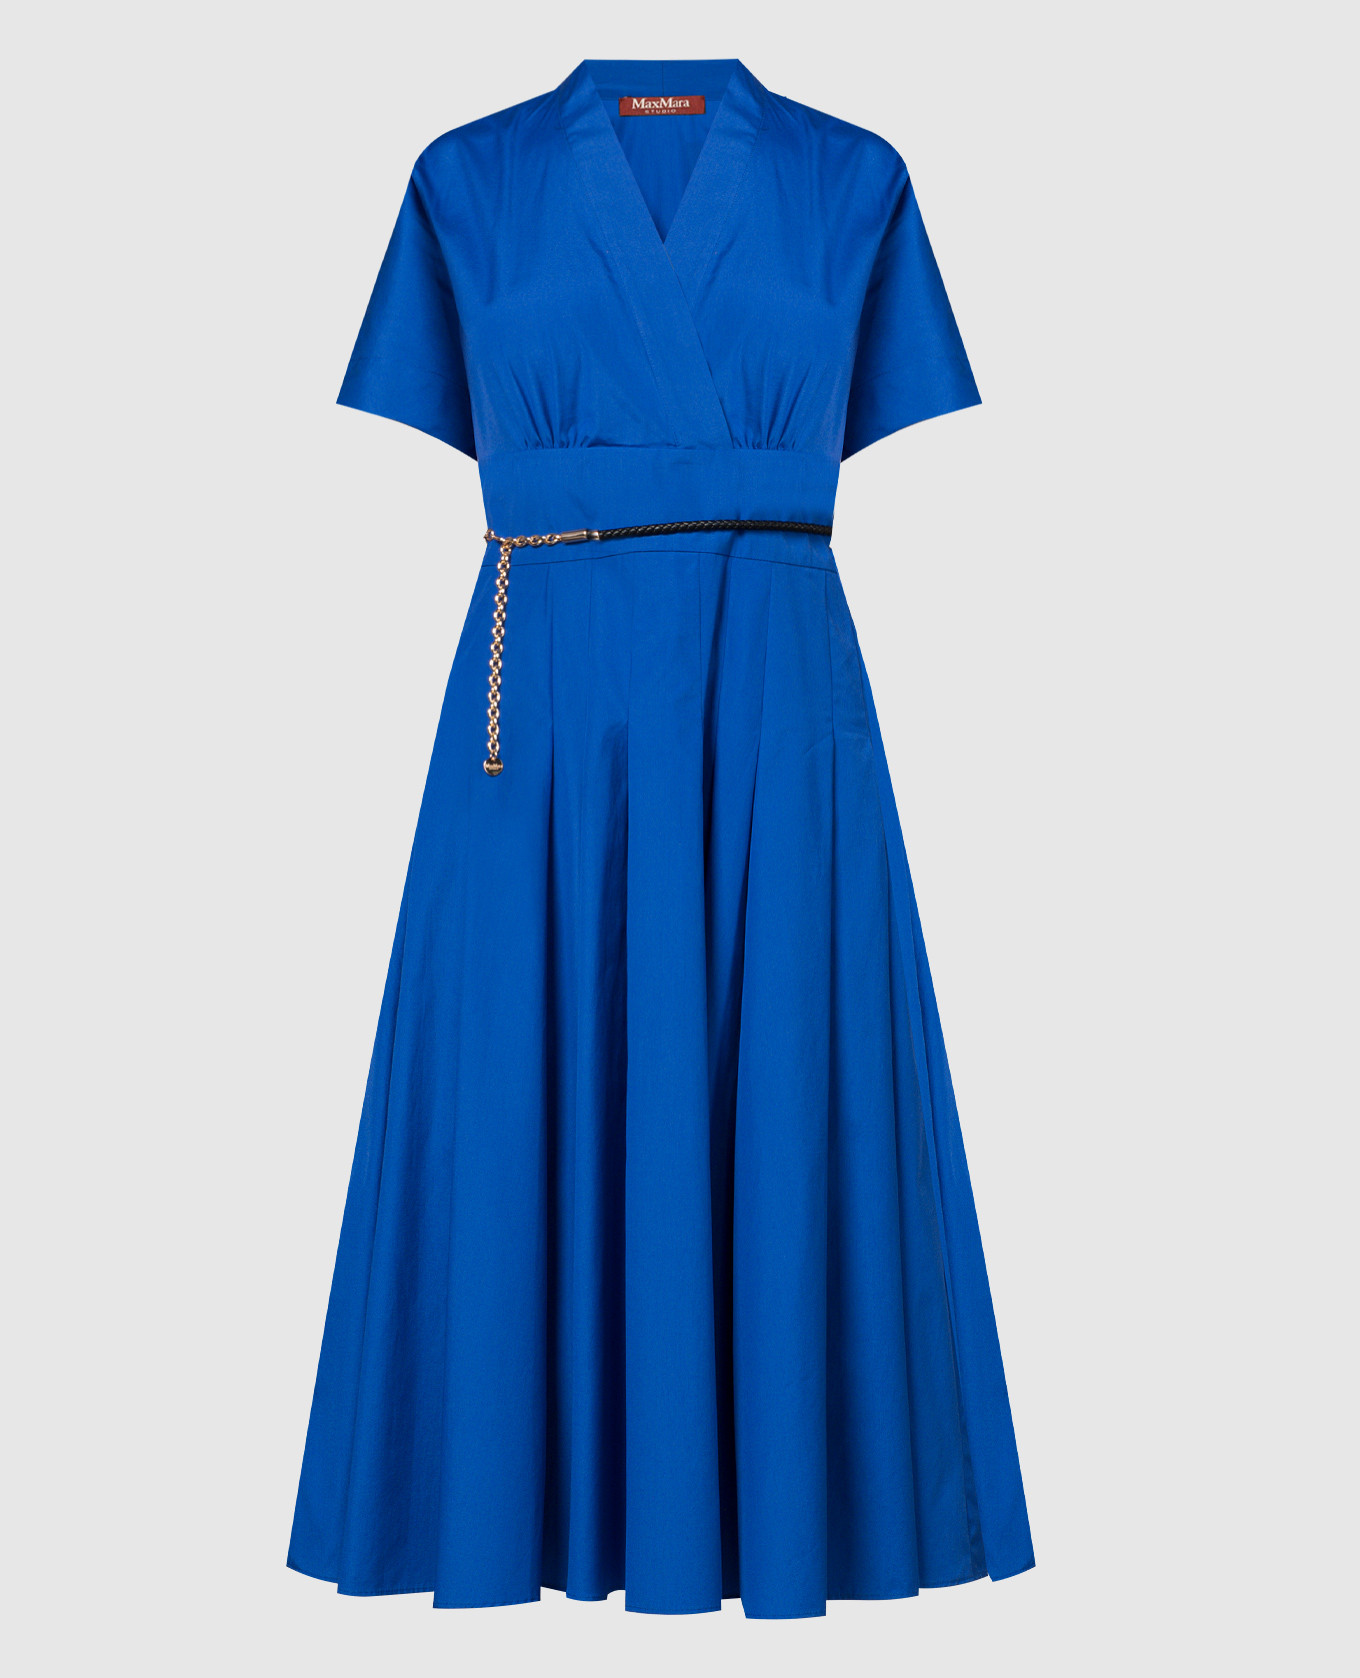 Blue ALATRI dress